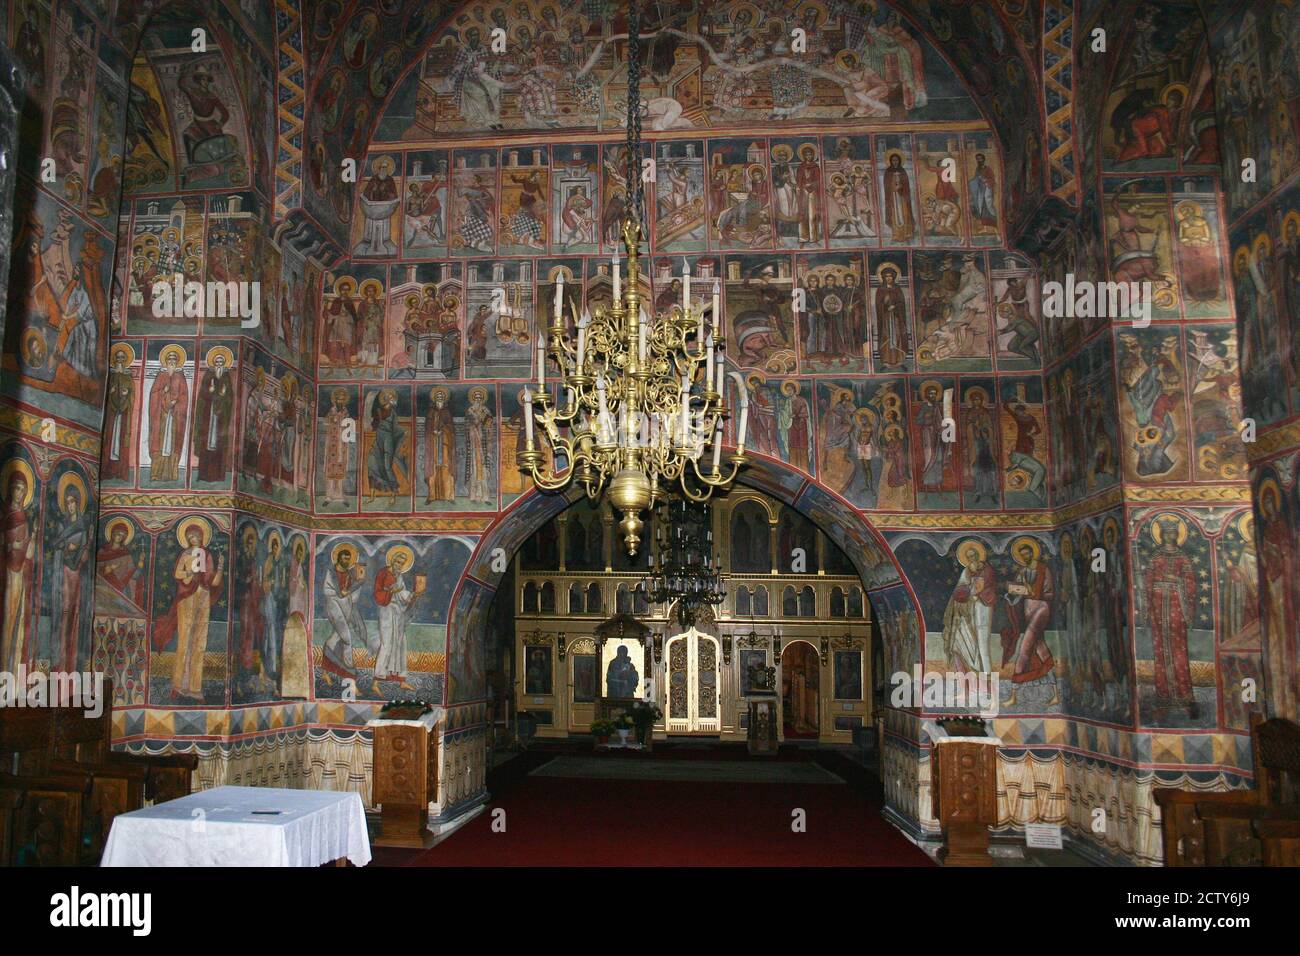 Biserica sfantul dumitru hi-res stock photography and images - Alamy